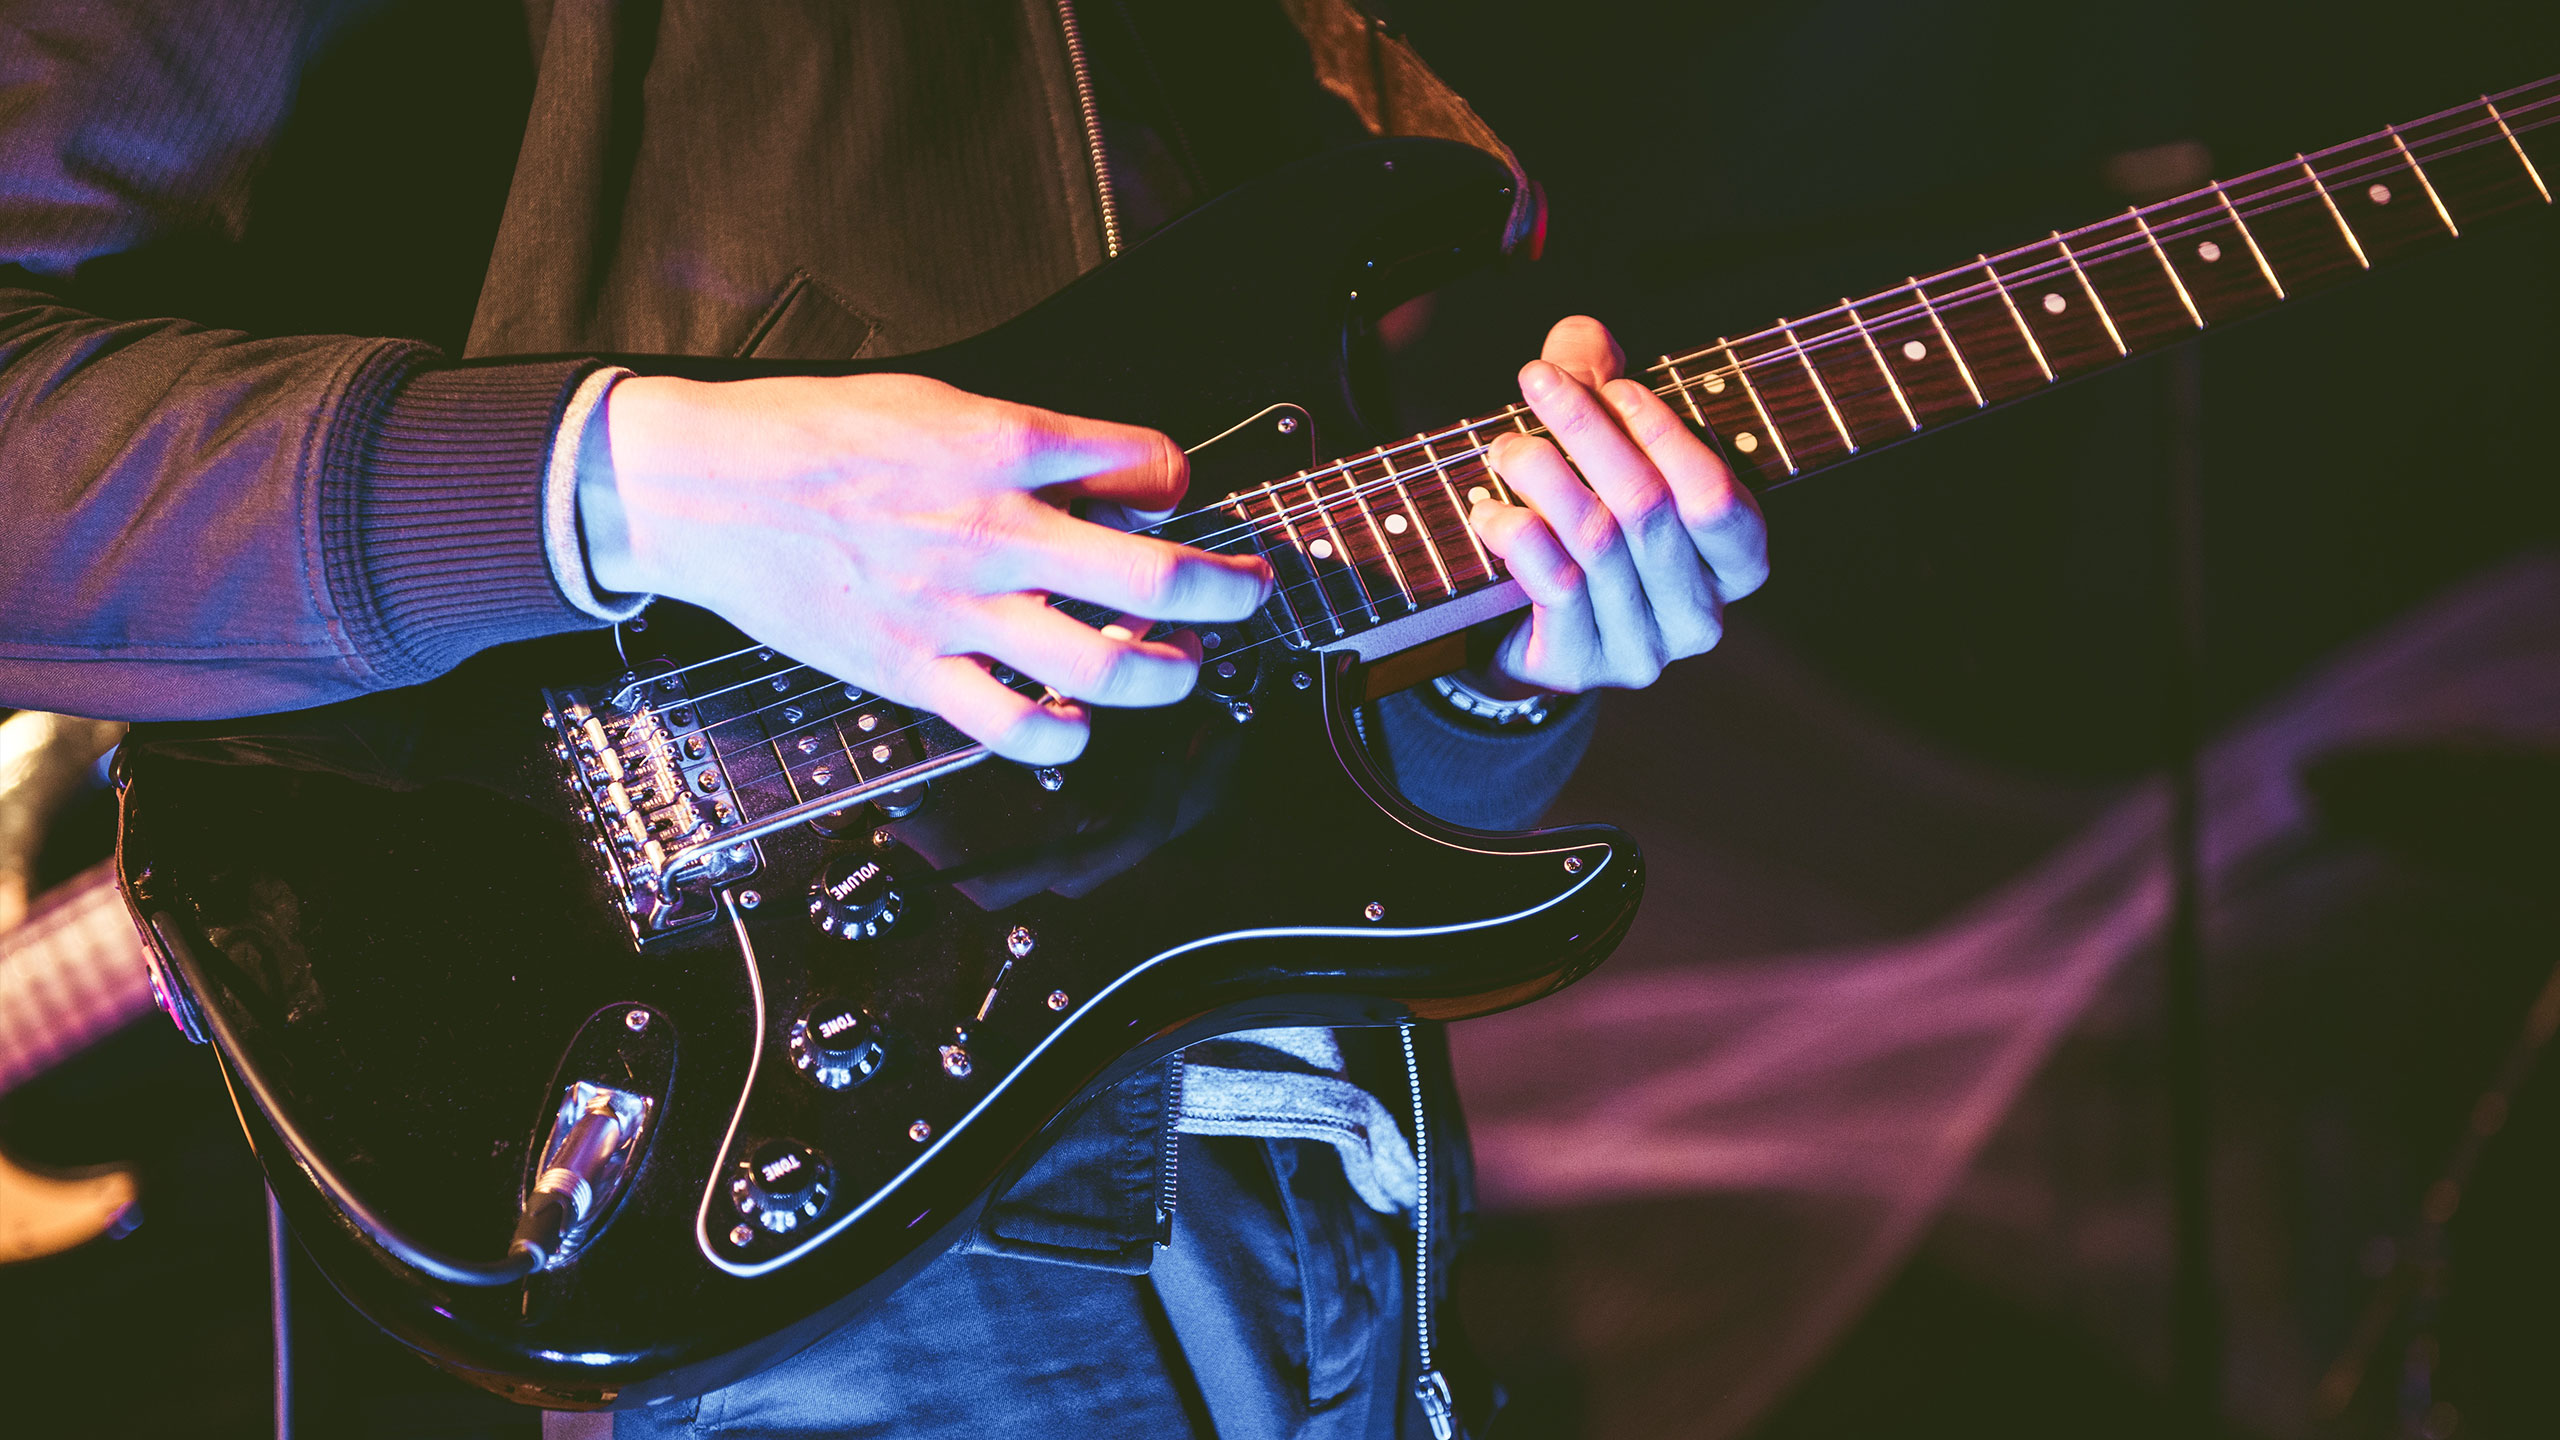 A close up photo Honne's James Hatcher's black guitar